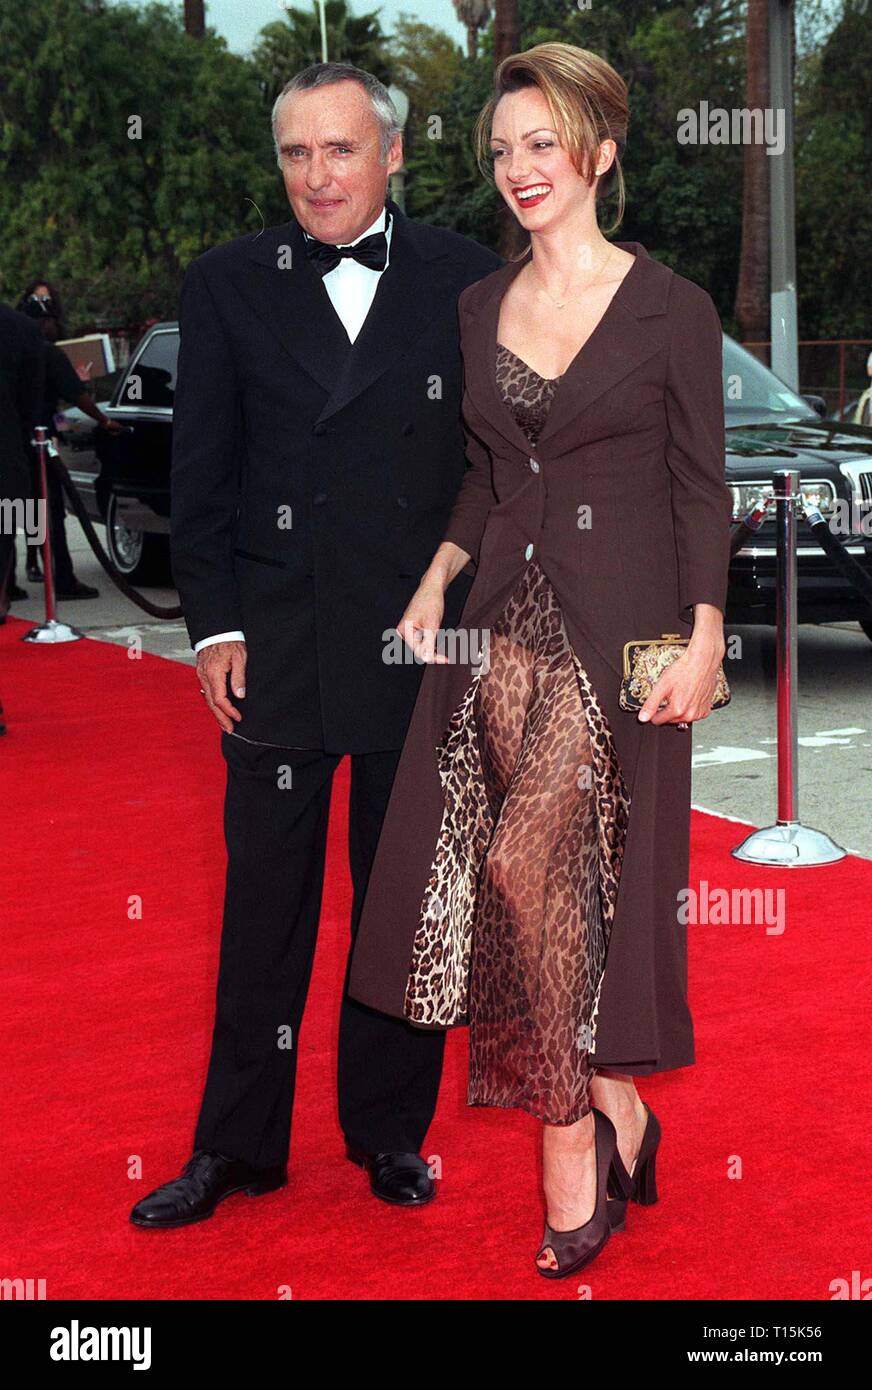 LOS ANGELES, Ca. März 12, 1997, 11 Mär 97: Schauspieler Dennis Hopper & Frau Victoria Duffy am Blockbuster Entertainment Awards. Stockfoto